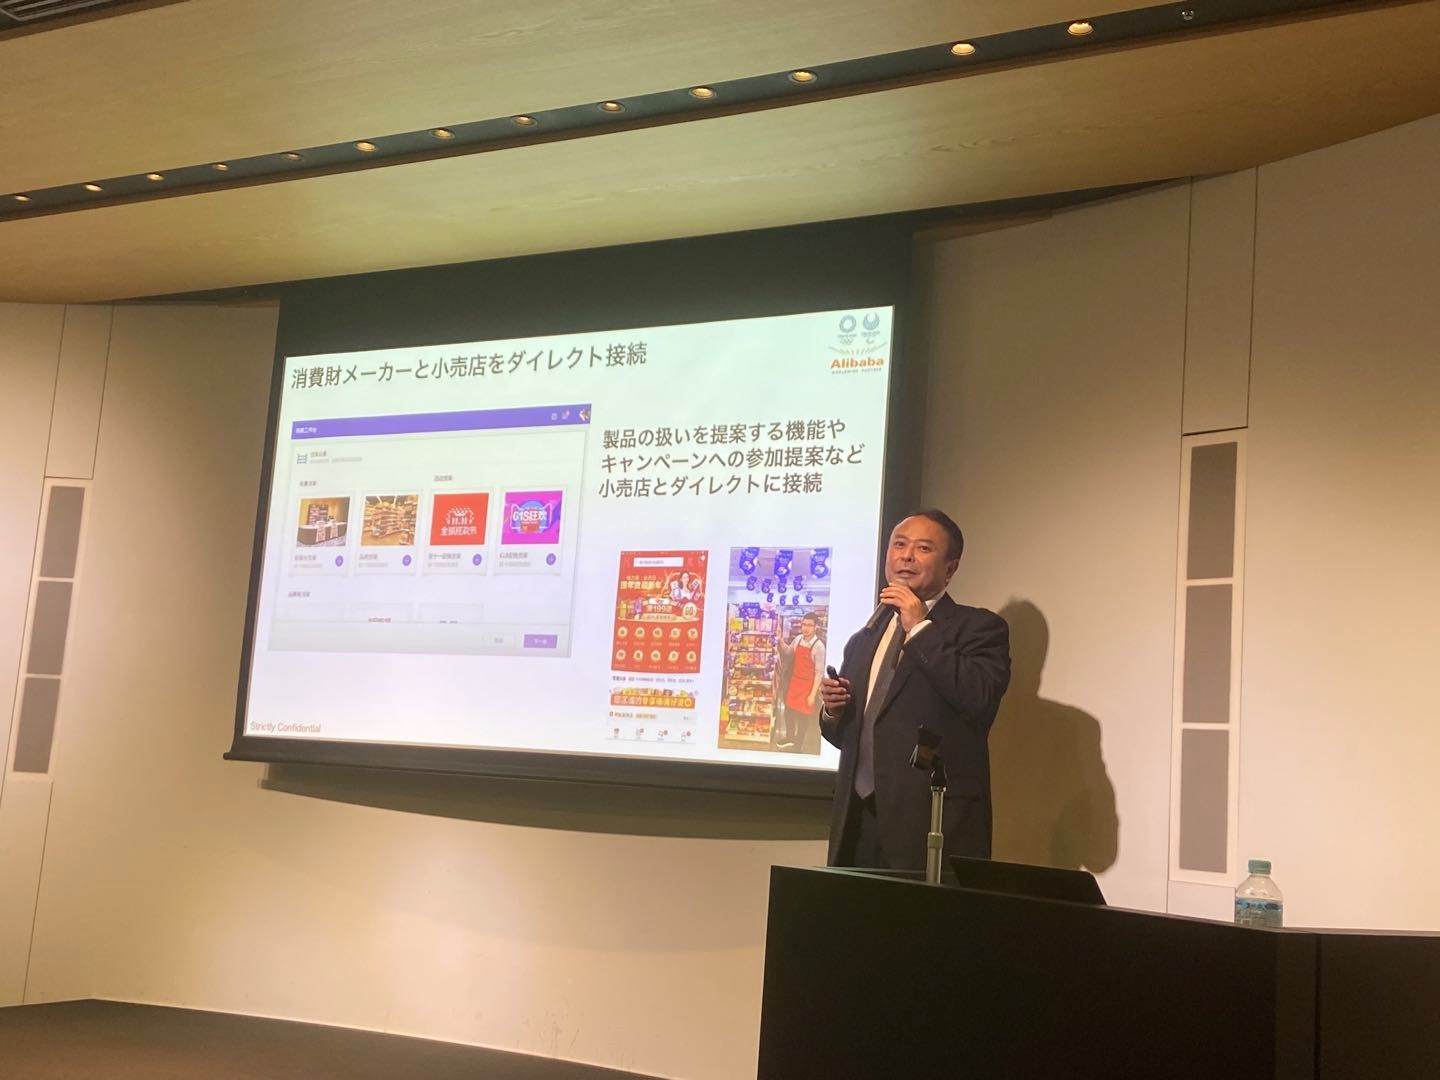 看中国互联网巨头如何引领产业数字化，36Kr Japan携手Nikkei面向日本举办第六期中国科技赋能行业创新论坛